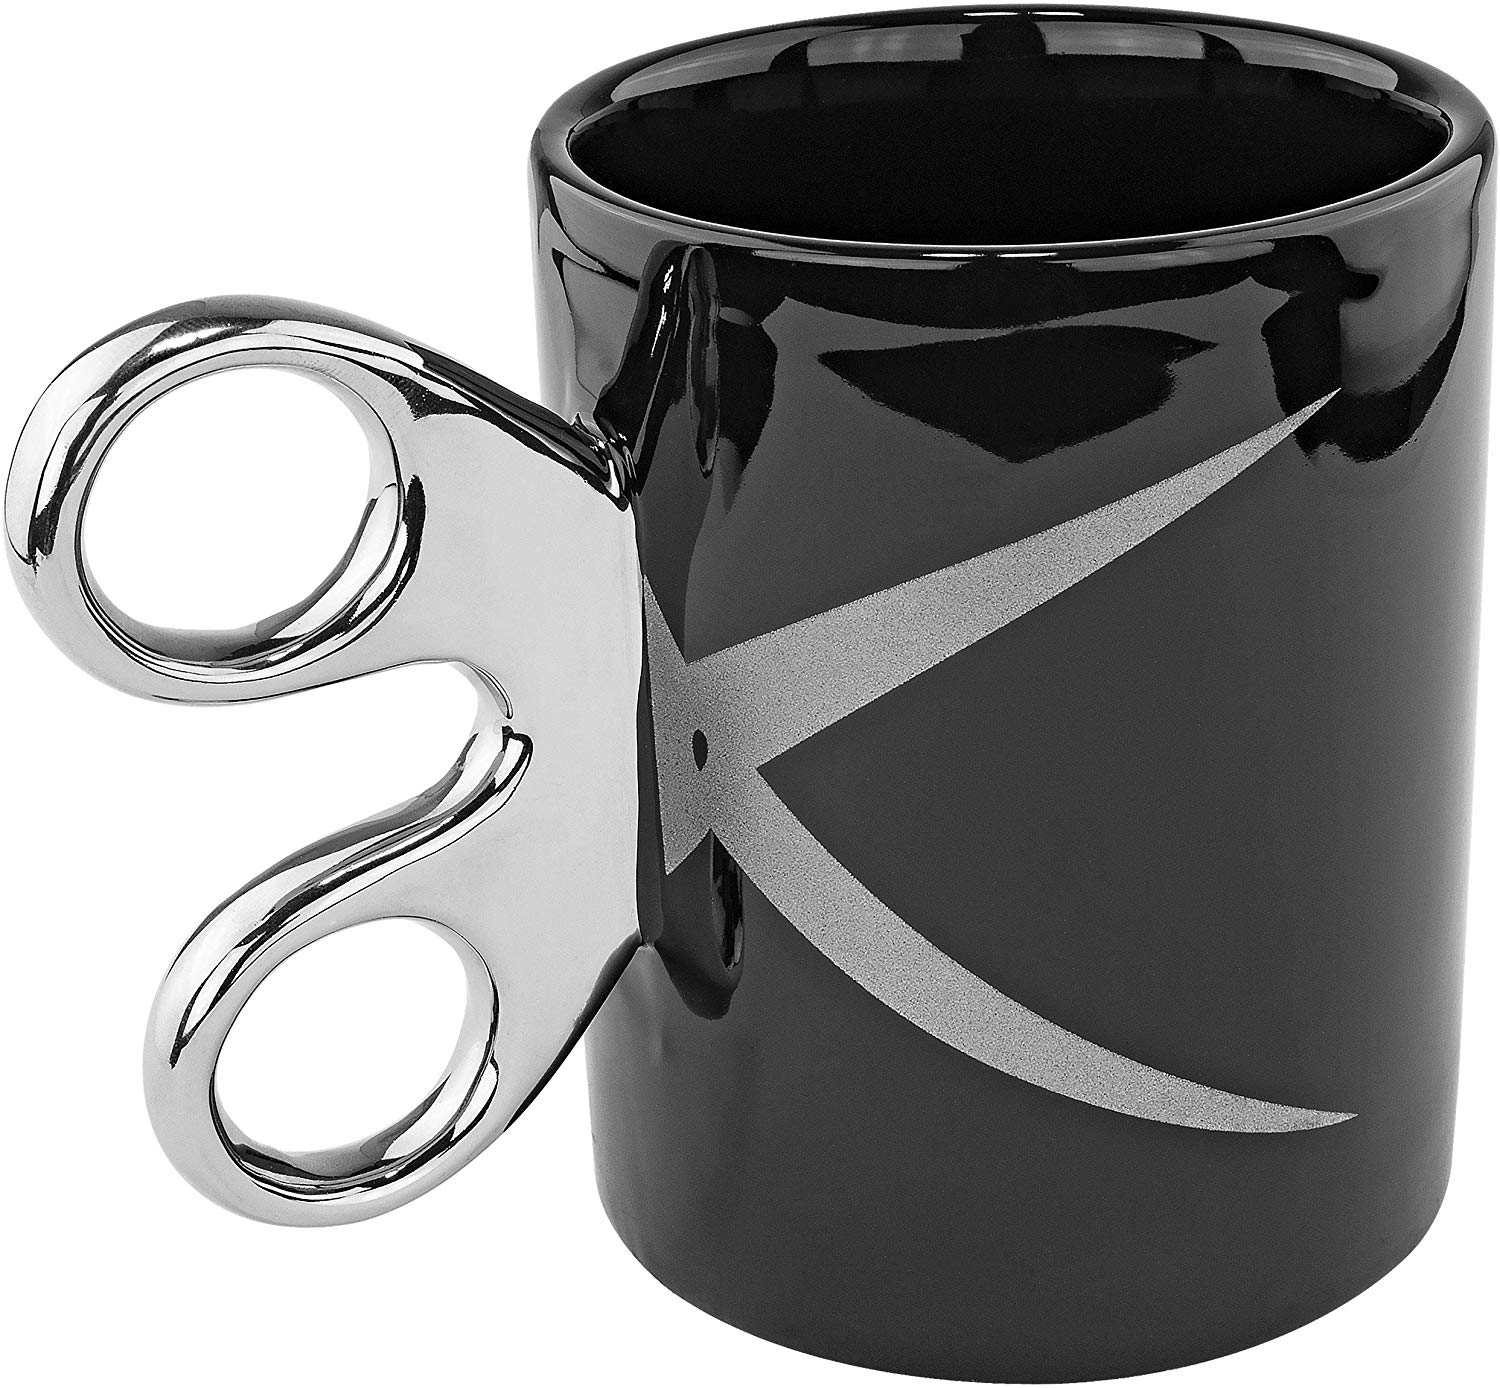 Scissor Handle Ceramic Coffee Tea Mug